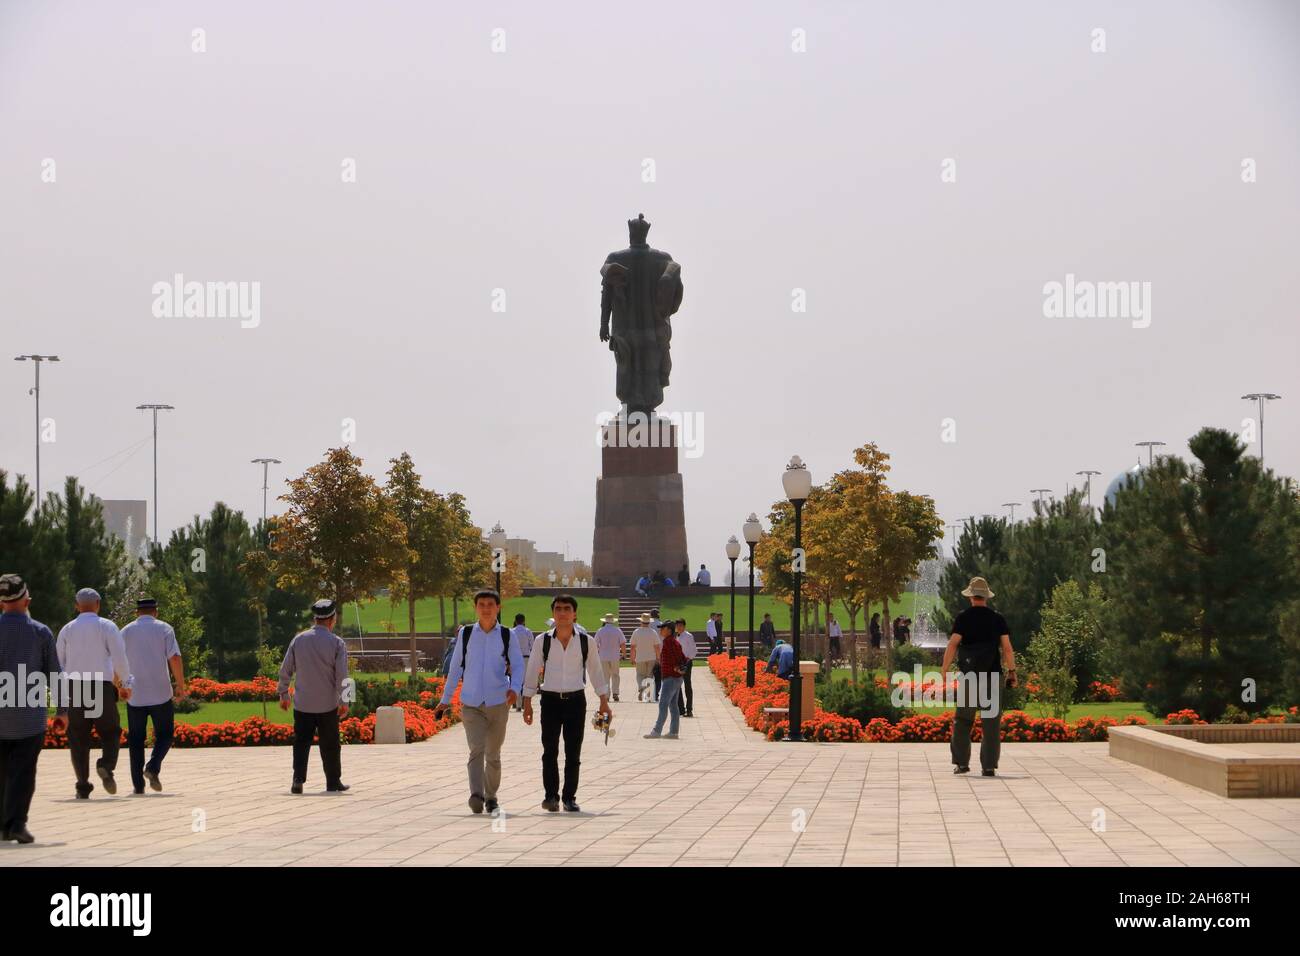 26 settembre 2019 - Shahrisabz, Uzbekistan: Amir Timur monumento nei pressi della AK-saray palace Foto Stock